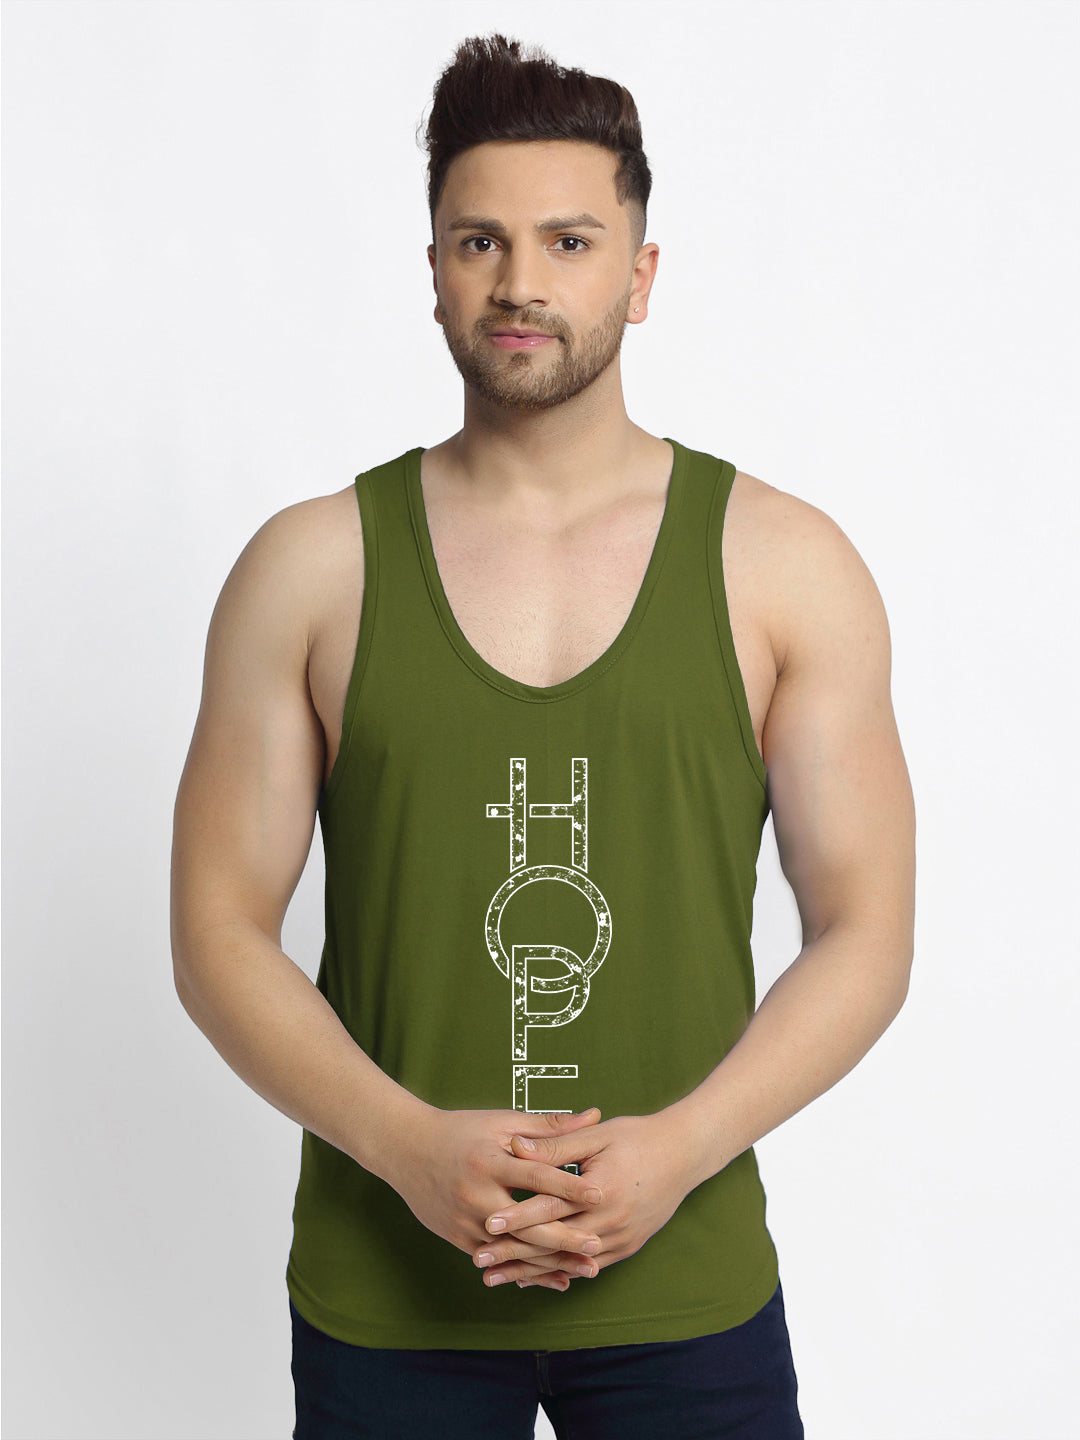 New Hope Printed Innerwear Gym Vest - Friskers